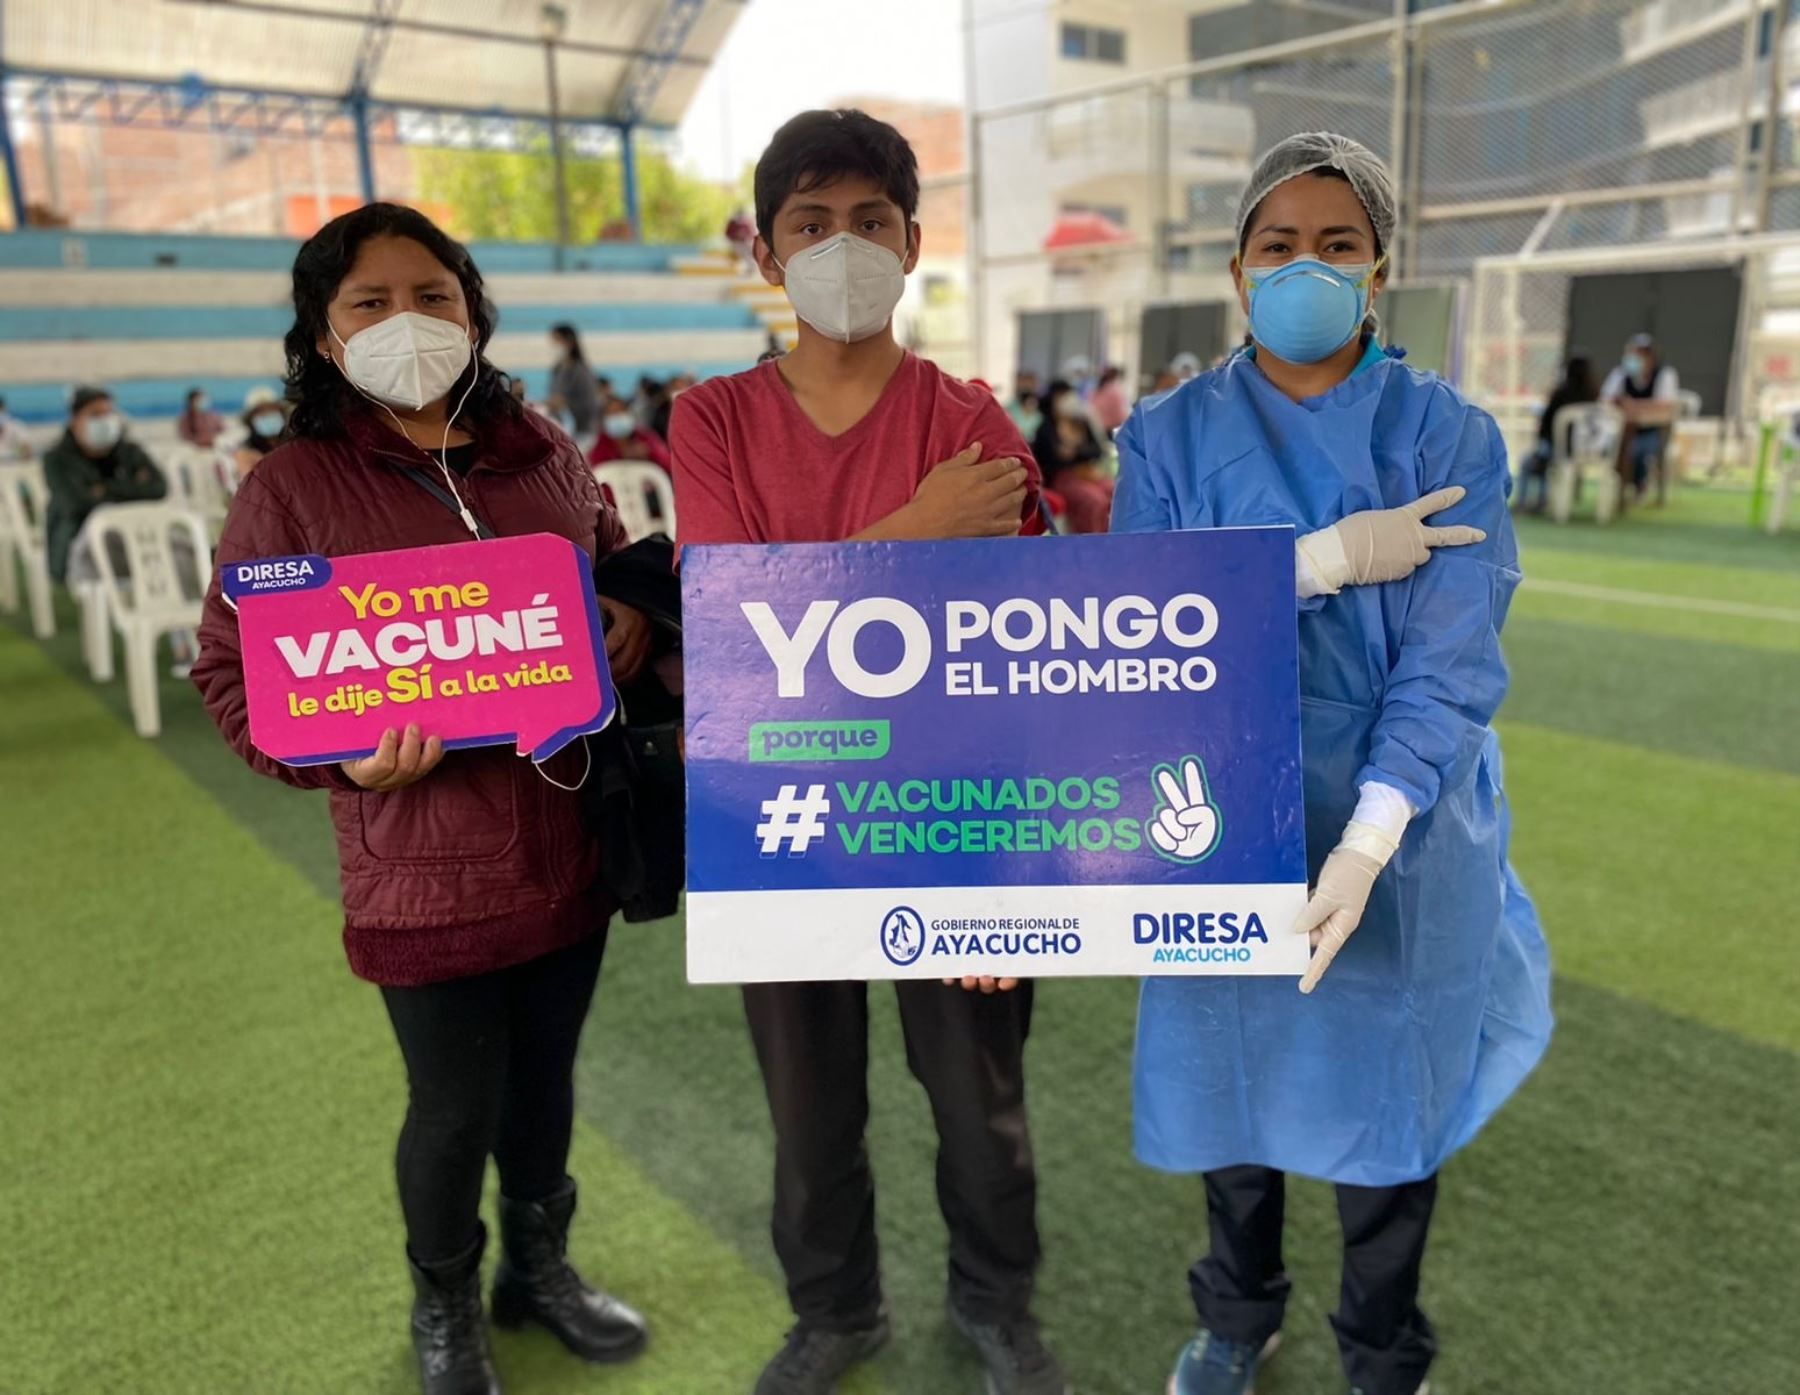 Ayacucho destaca que más de 16,000 jóvenes recibieron la vacuna contra el covid-19 durante la reciente Vacunatón que se desarrolló el último fin de semana en dicha región. ANDINA/Difusión